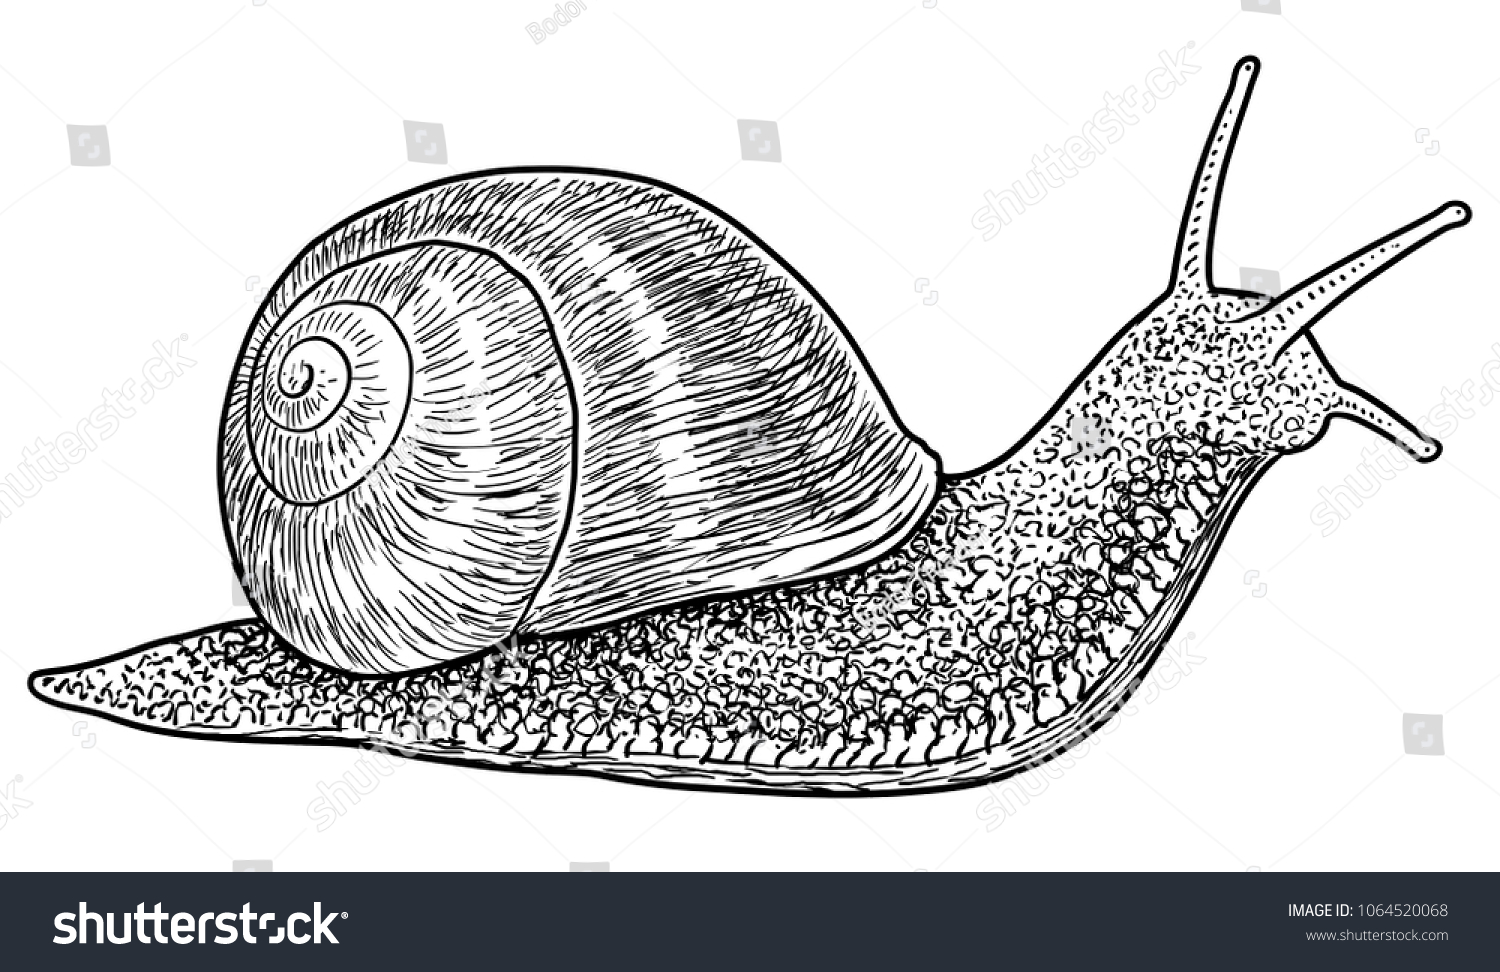 Брюхоногие моллюски зарисовка